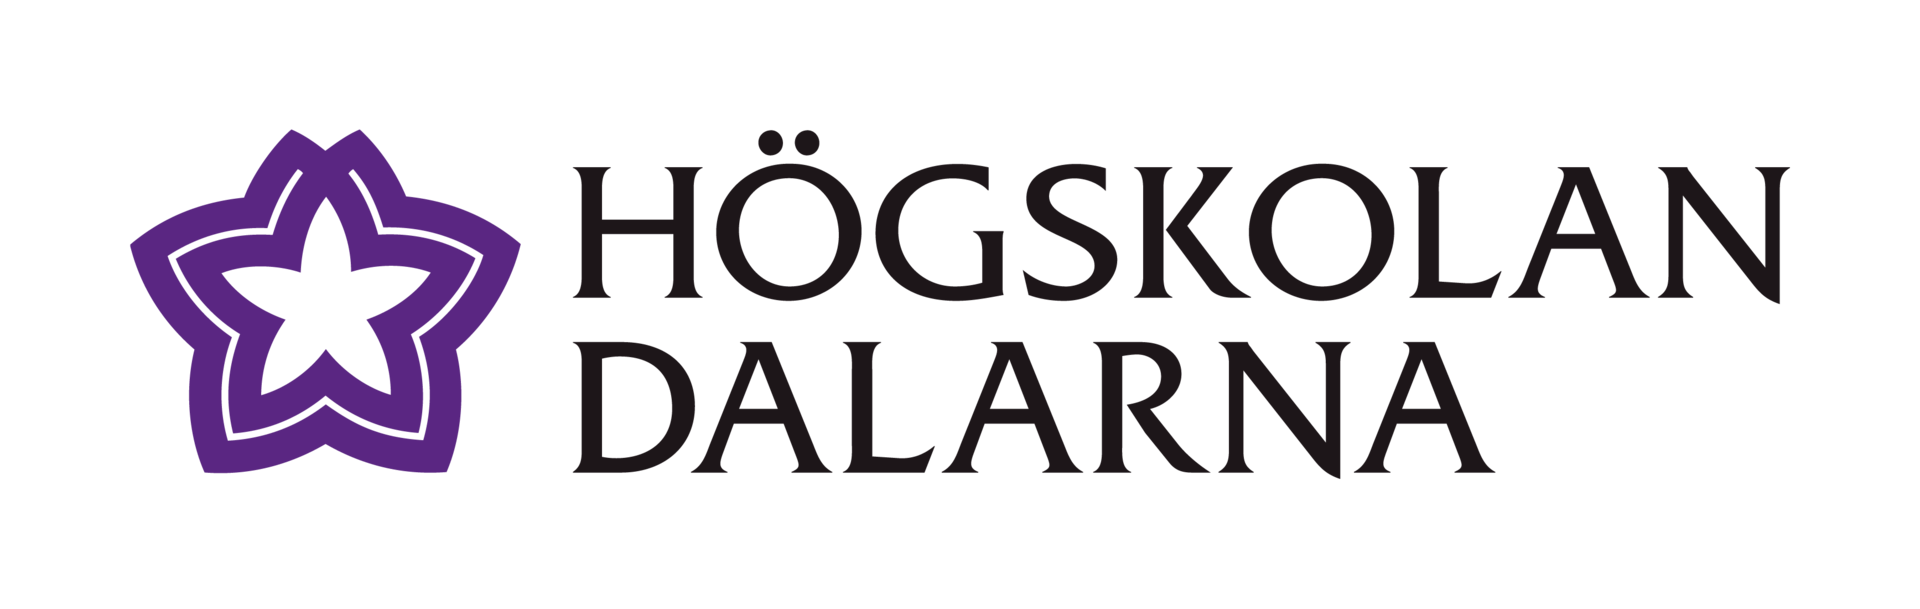 Högskolan Dalarna logo